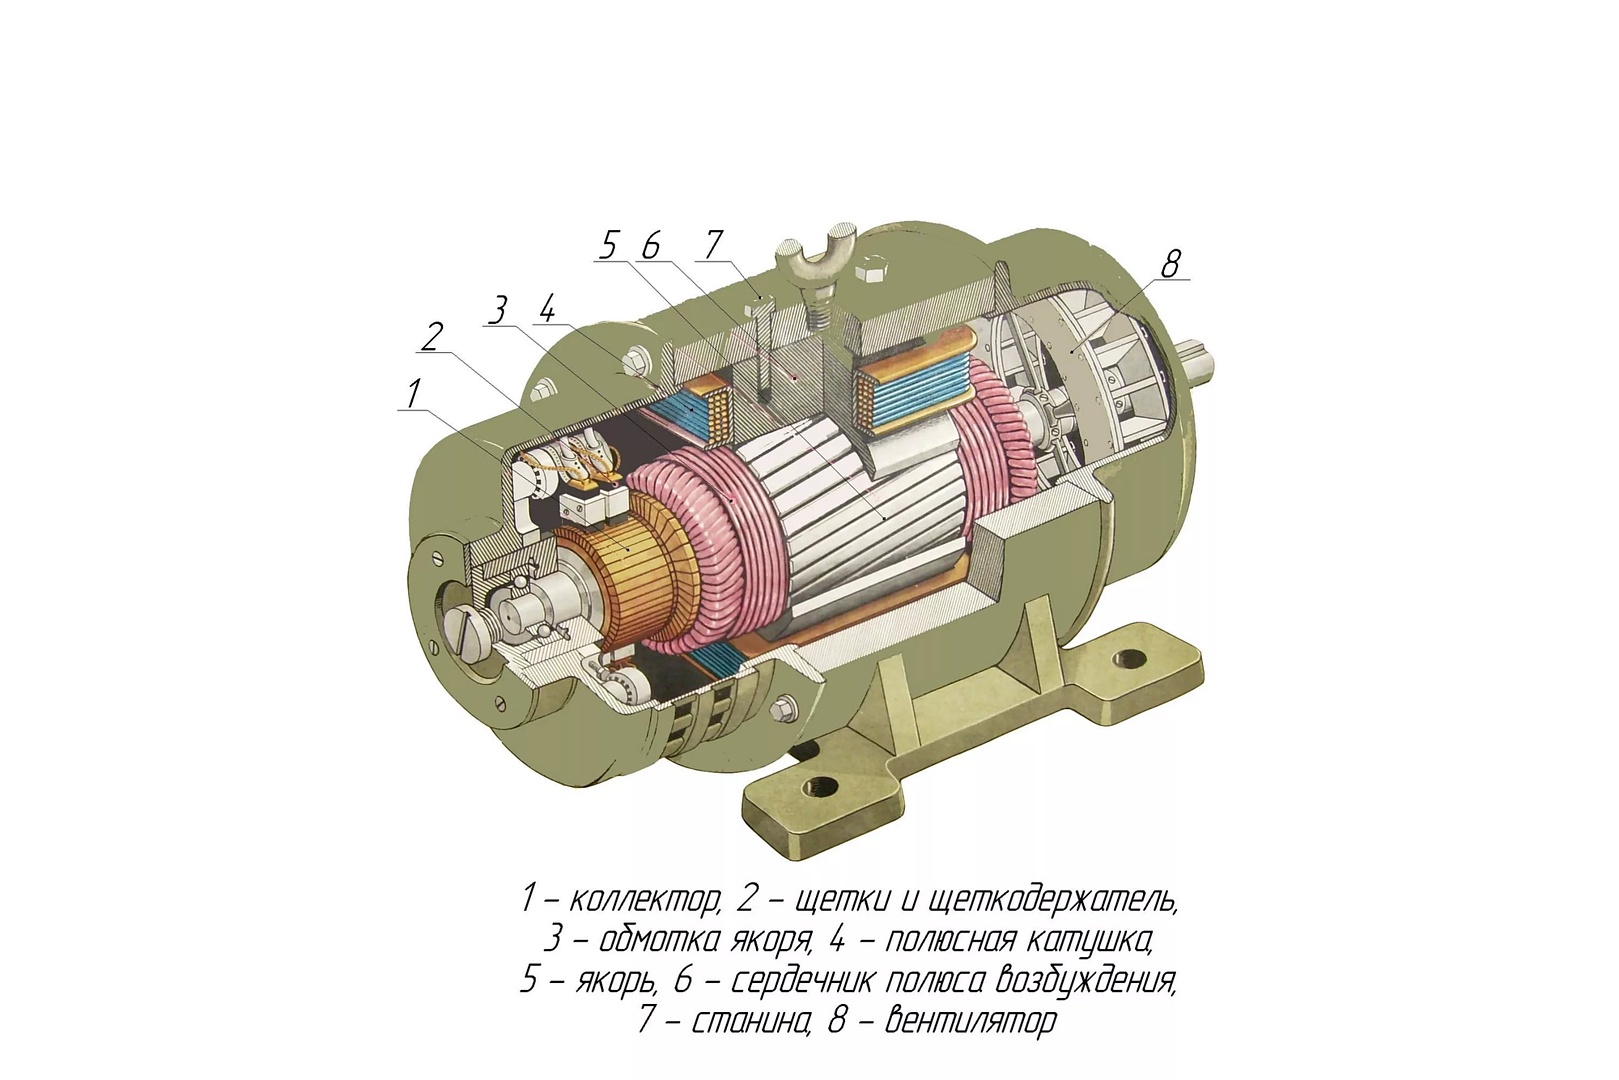 Как сделать авиамодельный двигатель типа ВЕТЕРОК 0,8